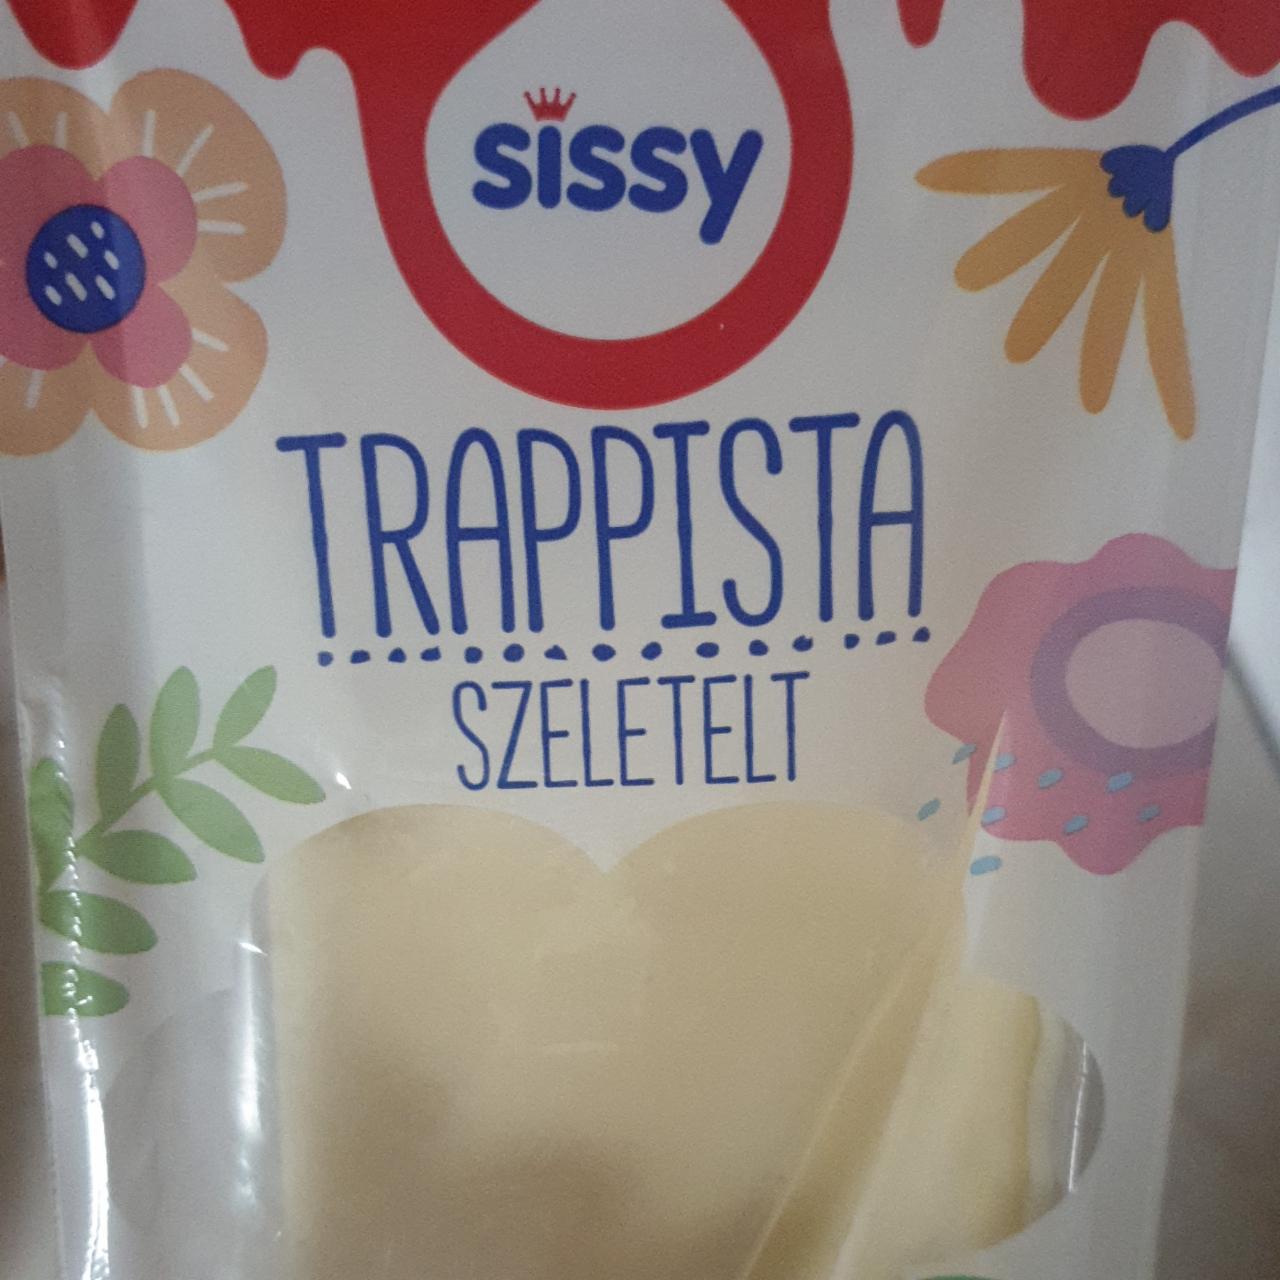 Képek - Trappista szeletelt Sissy